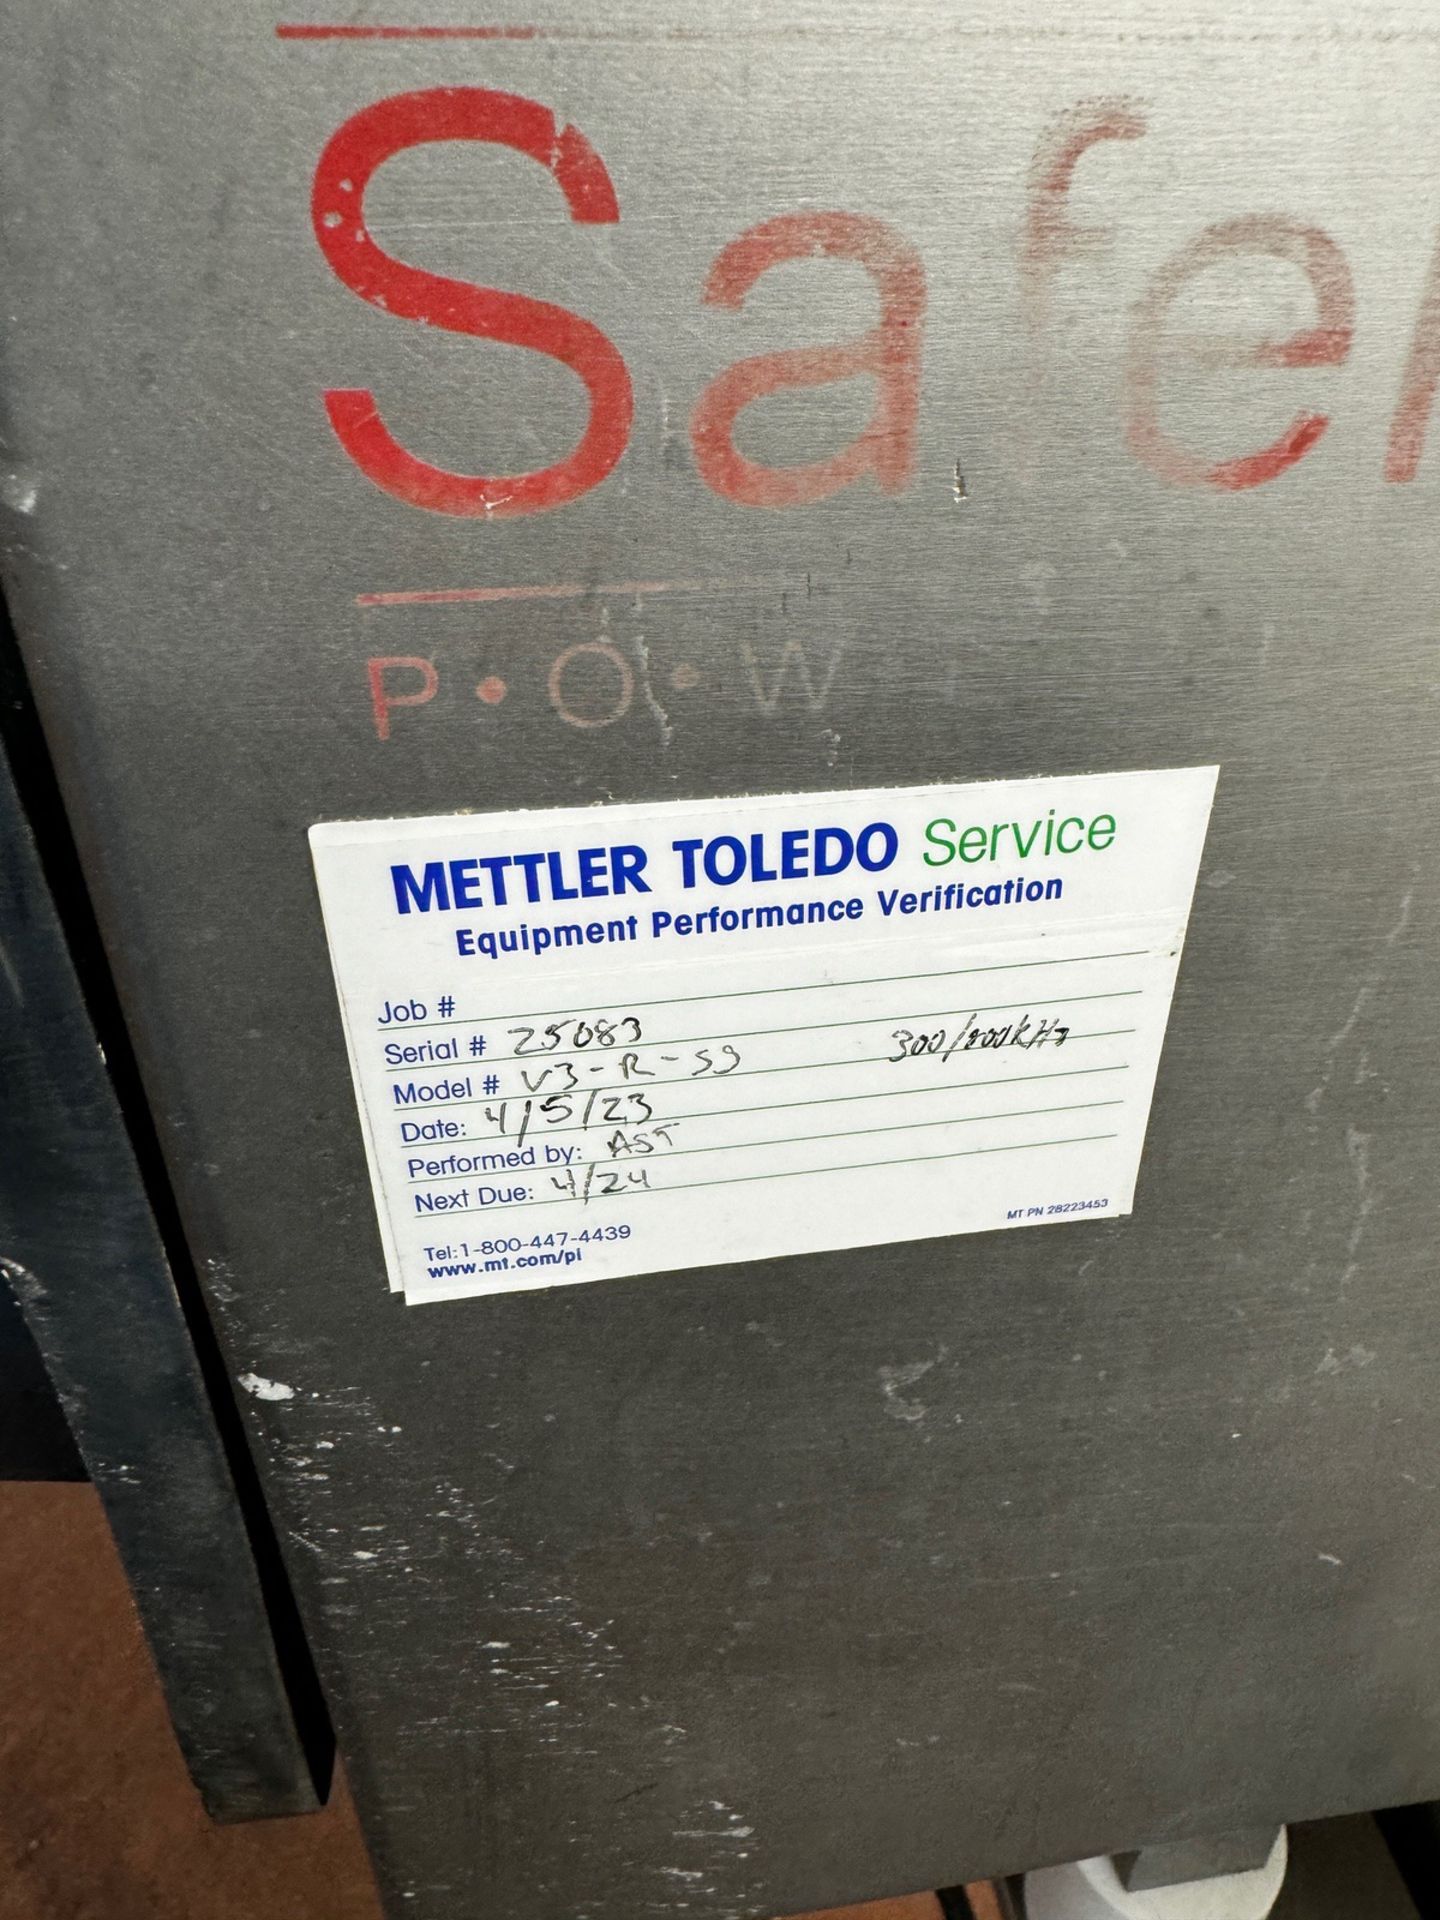 Mettler Toledo Safeline Metal Detector, S/N 25083, 12" W Aperture x 4.75" Clearance | Rig Fee $250 - Image 3 of 6